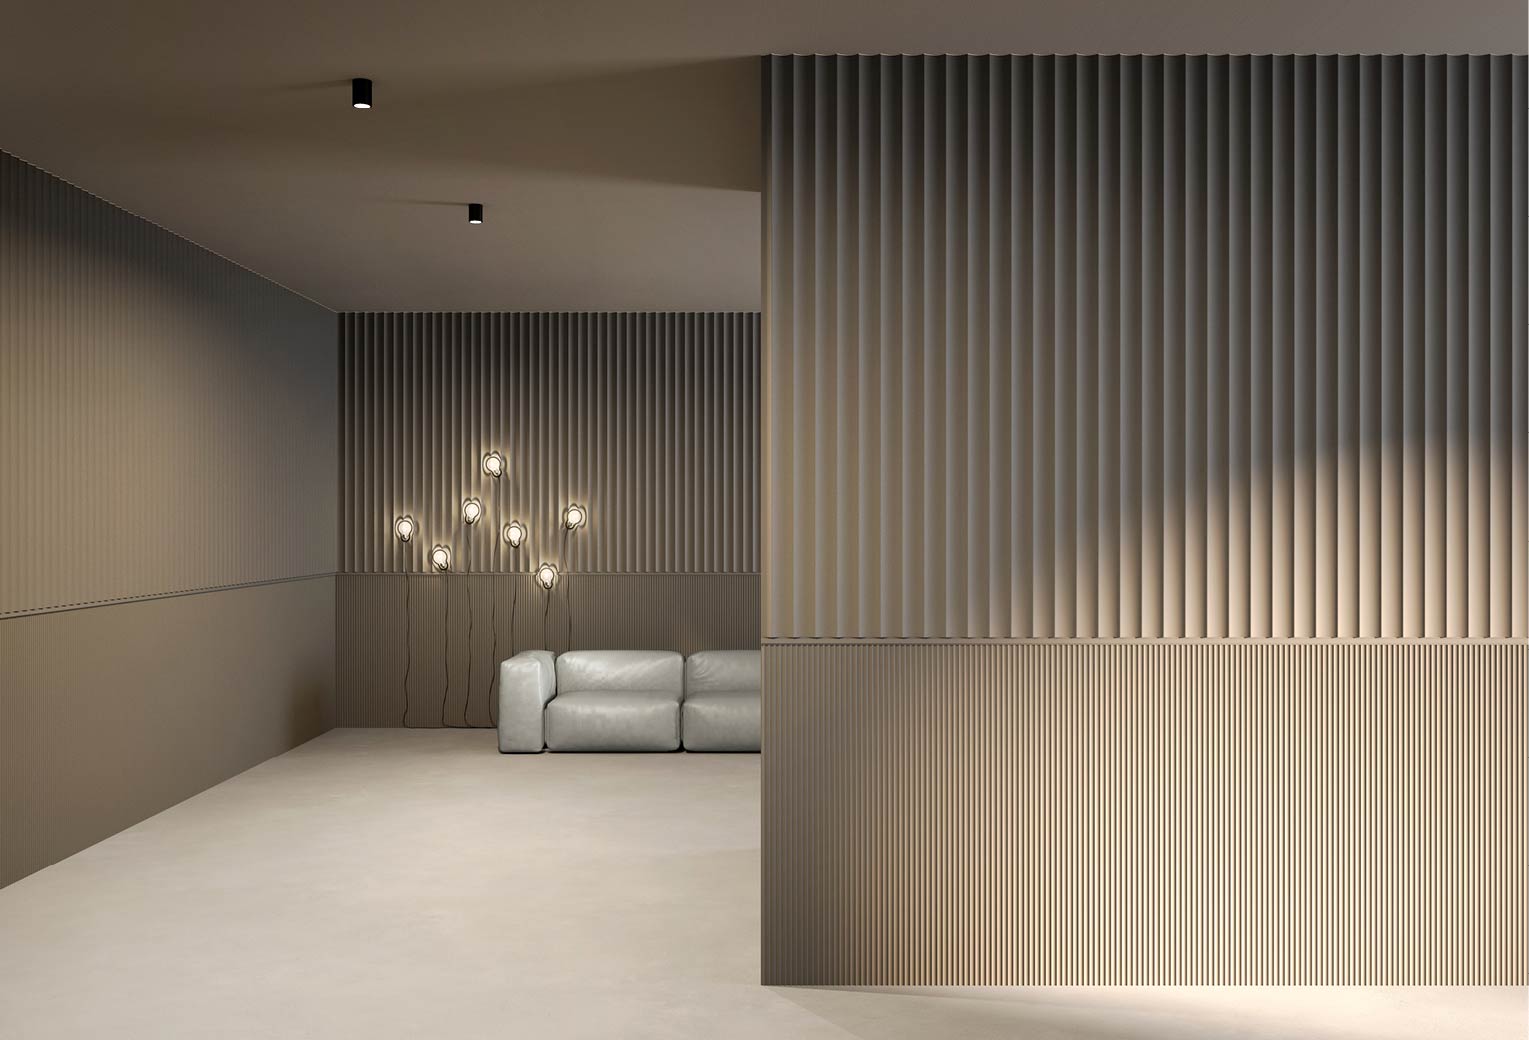 Panel decorativo ARKO en paredes de salón de un hogar en dos tamaños combinados con perfil en medio